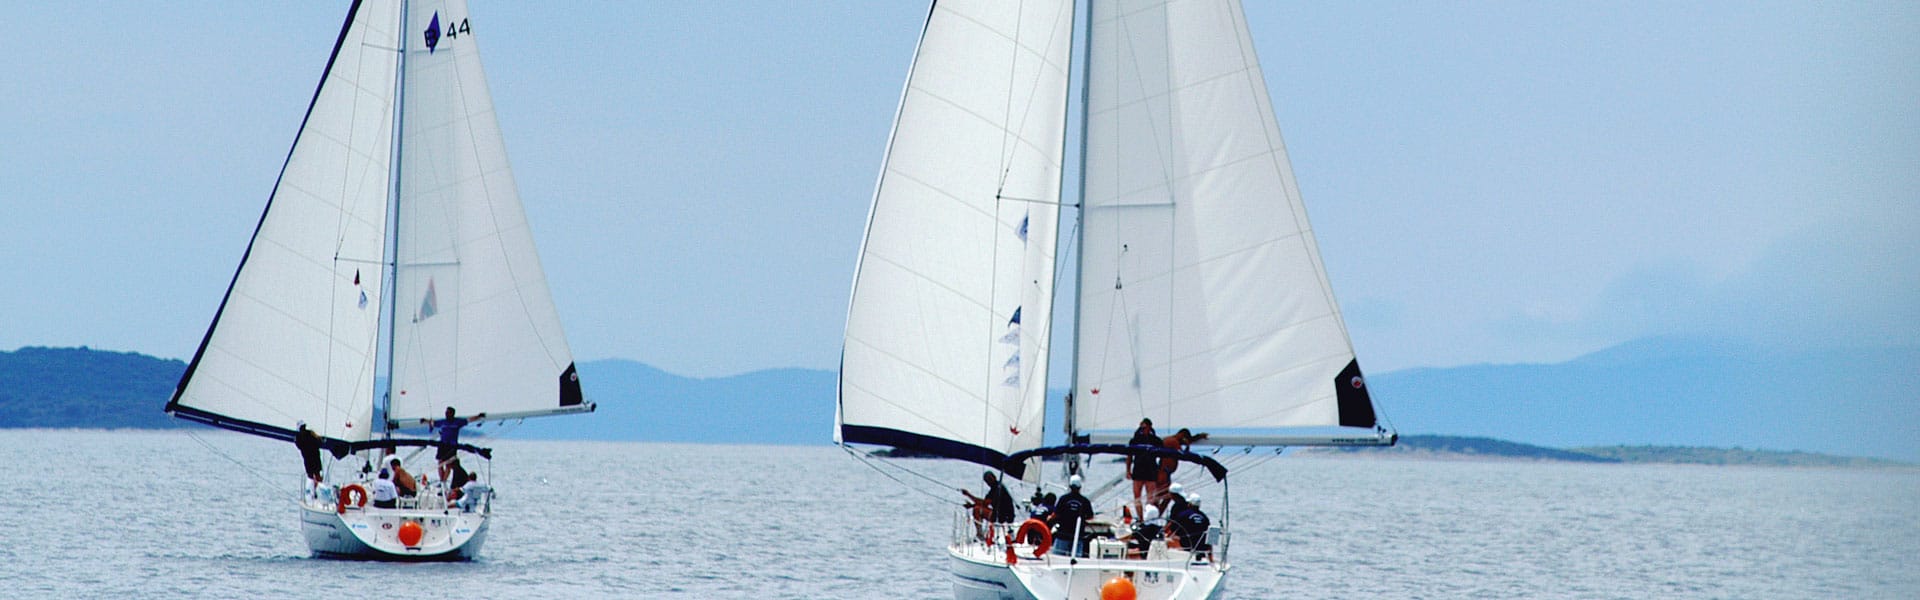 Incentive trip for companies: A sailing regatta through the Adriatic Sea from Split in Croatia